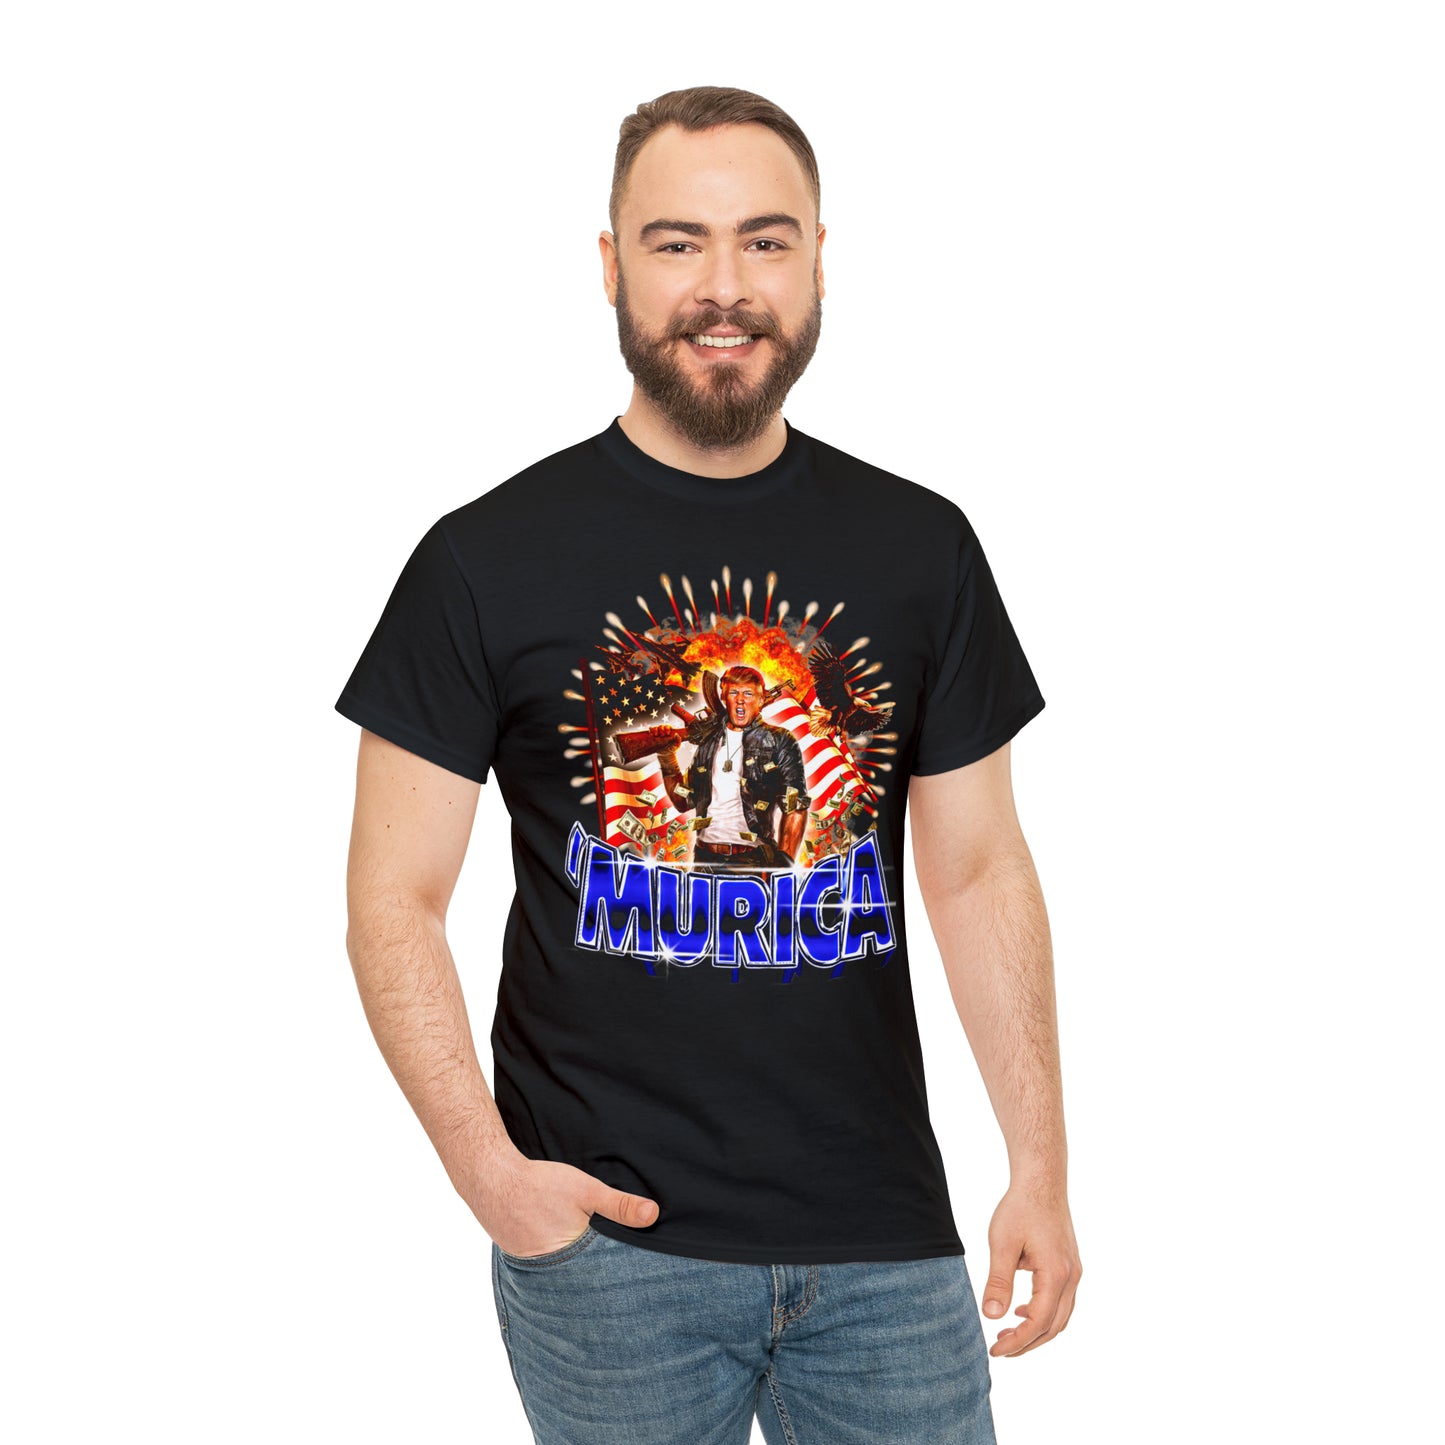 'MURICA T-Shirt!